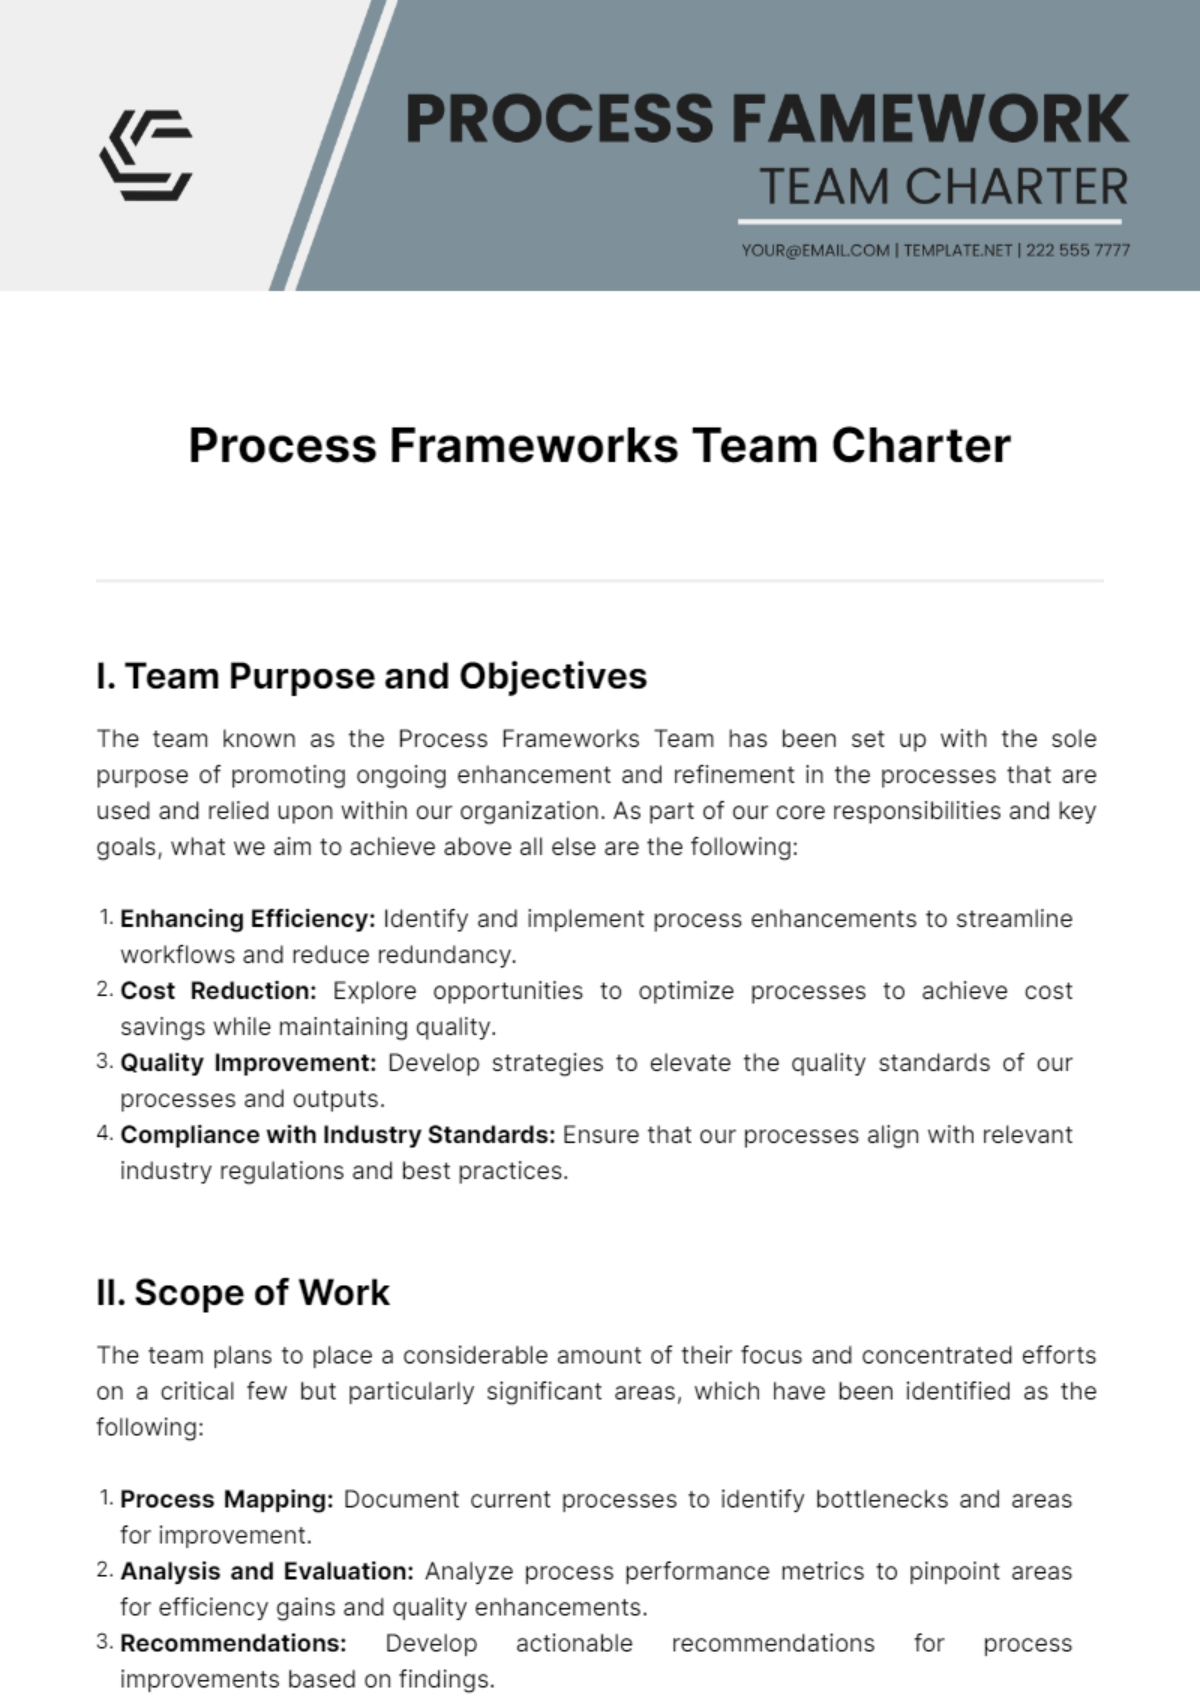 Process Frameworks Team Charter Template